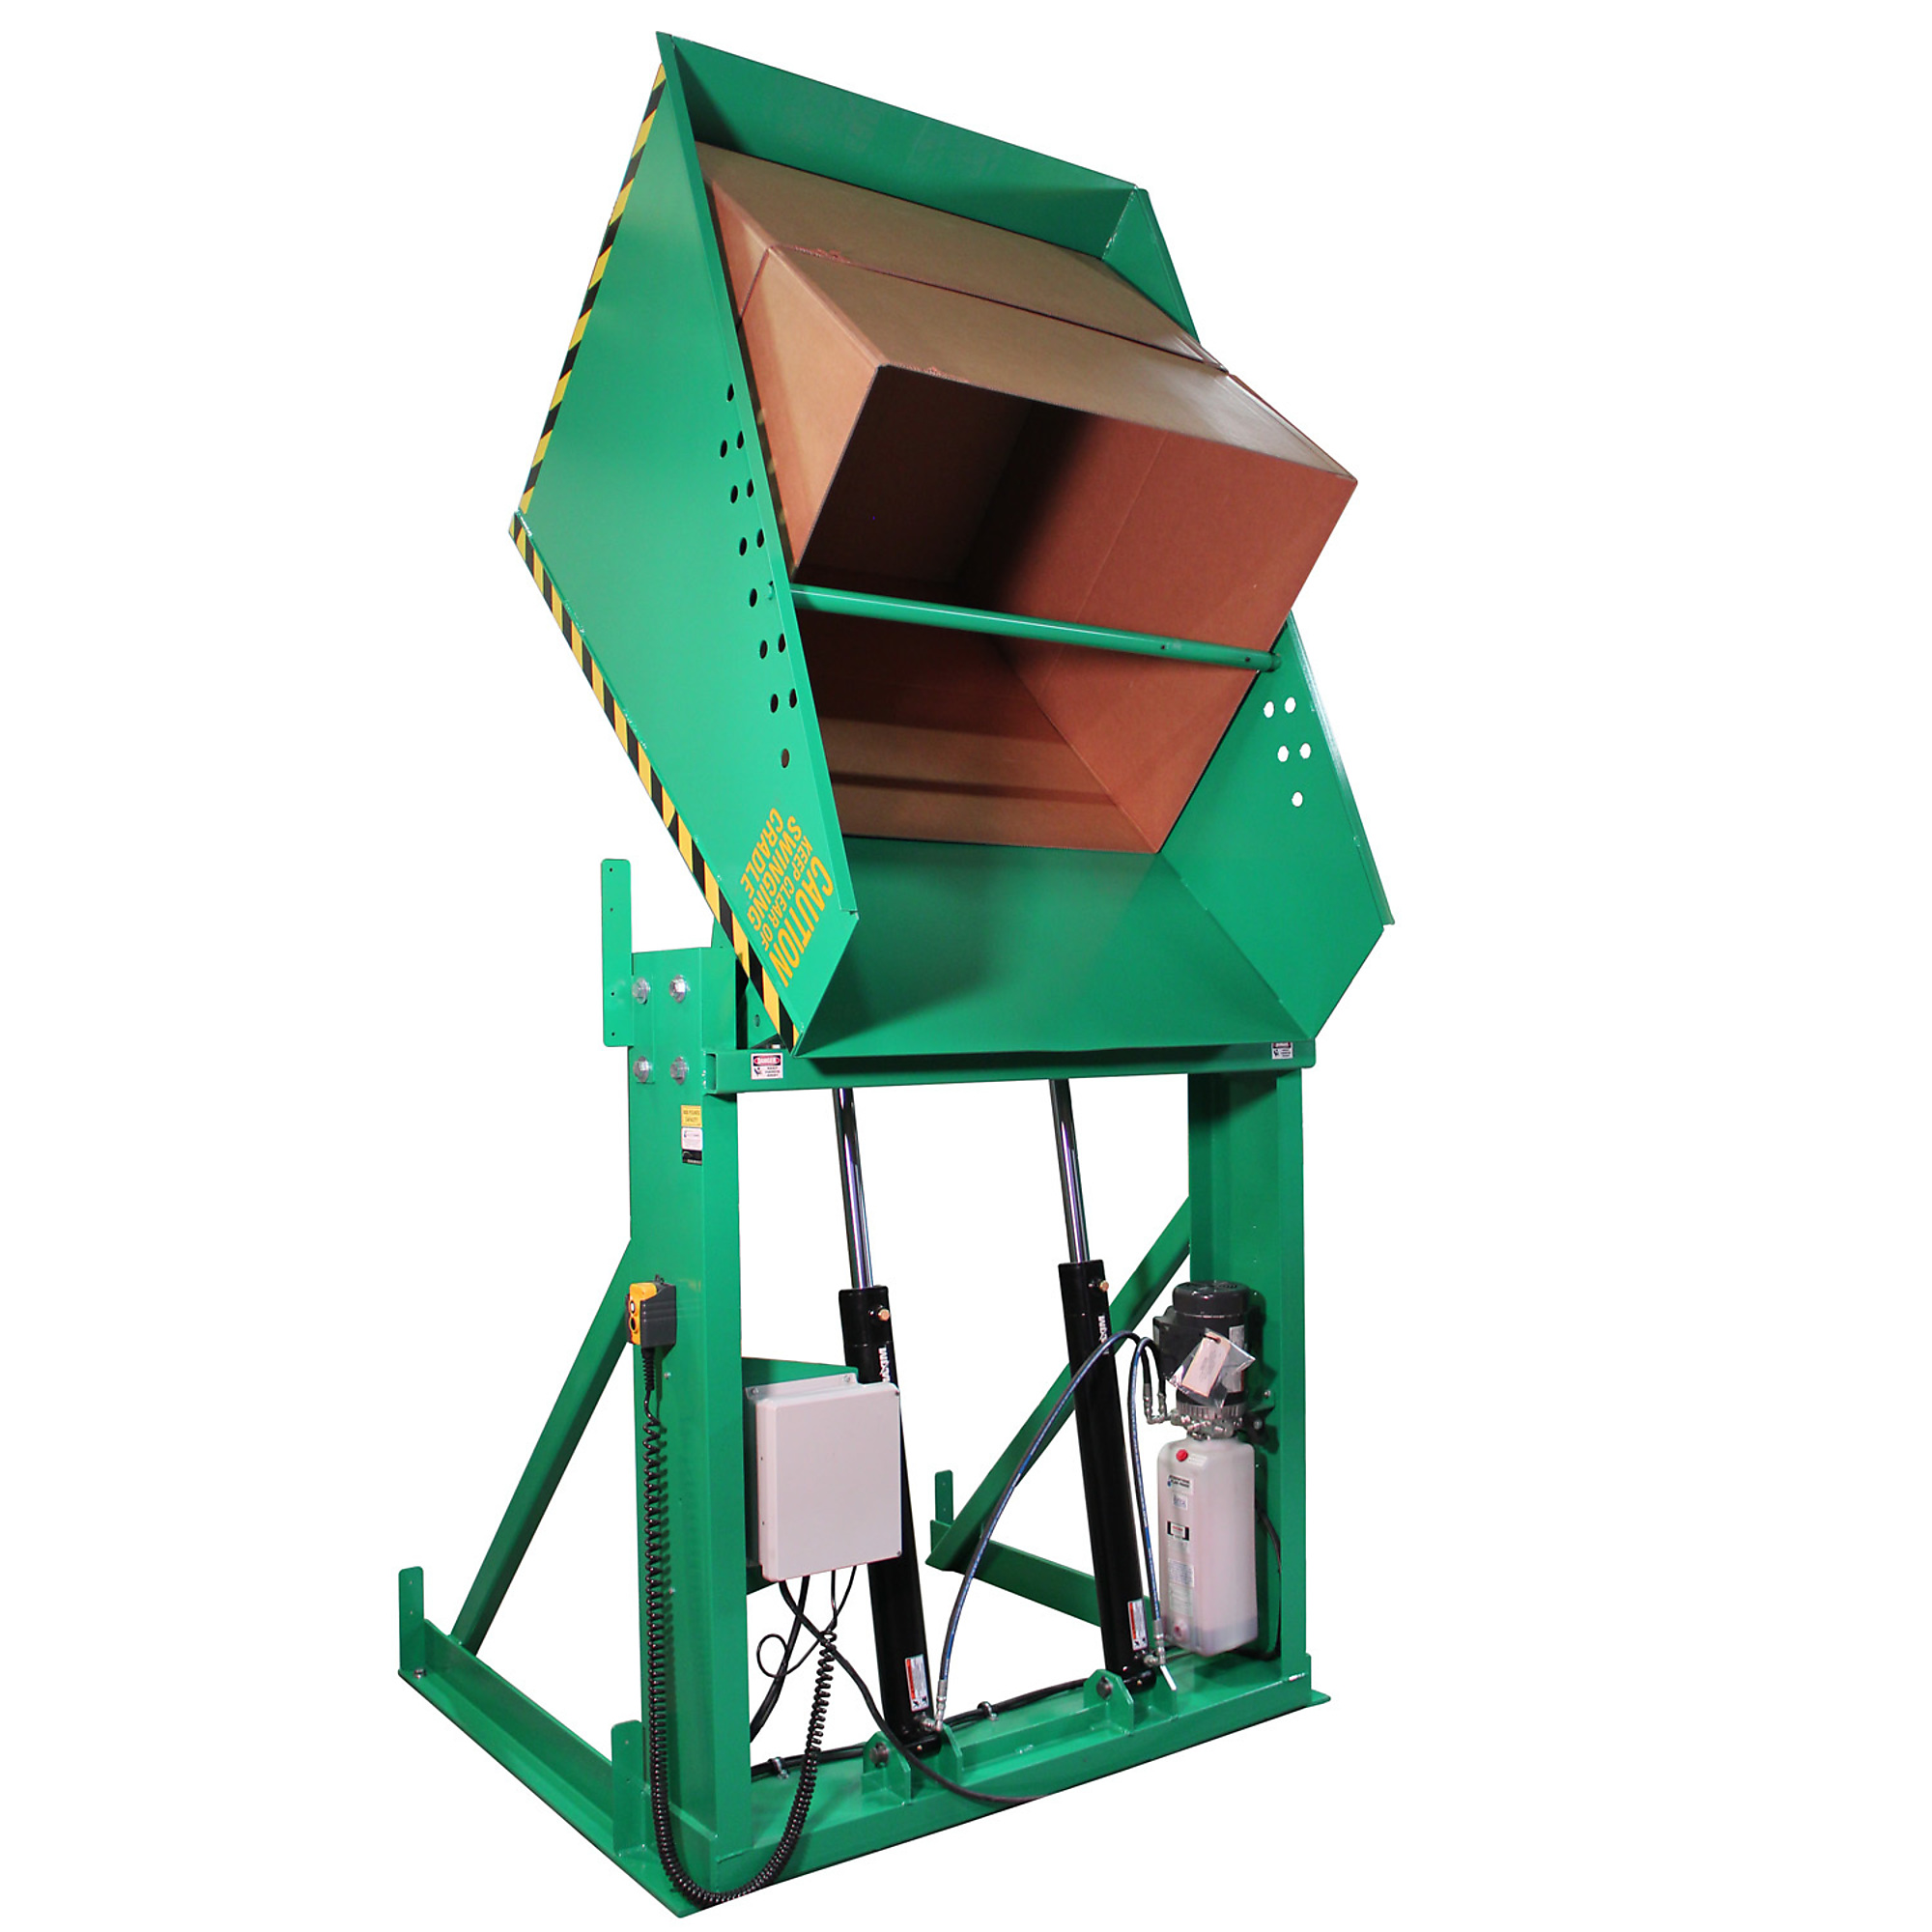 Valley Craft, Box Dumper, 36x36Inch Chute, Capacity 2000 lb, Color Green, Model F80175A5